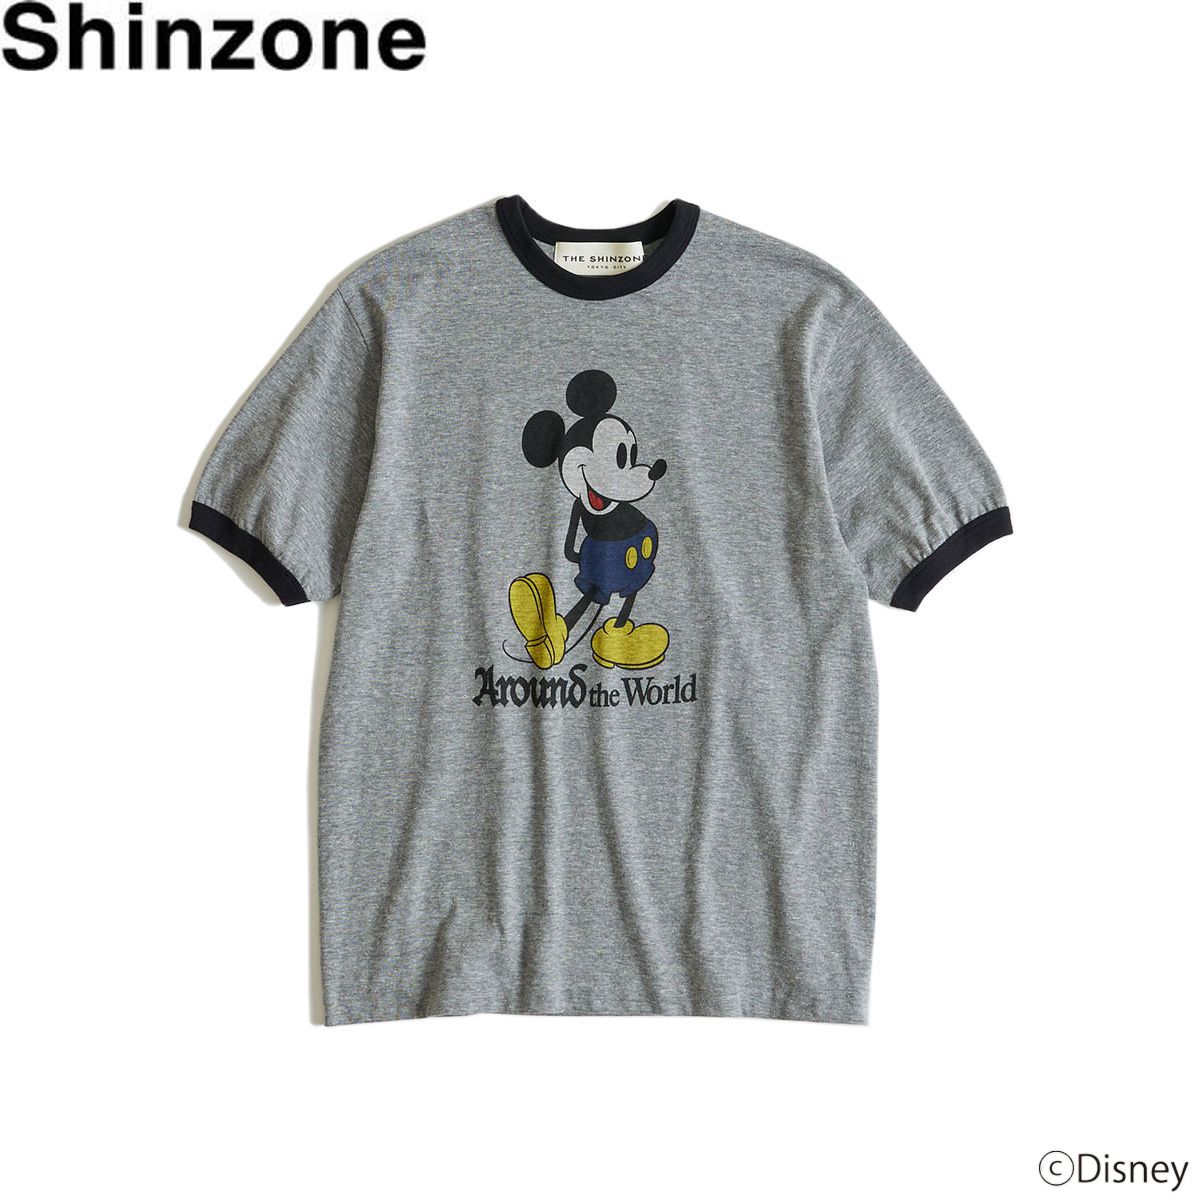 Shinzone(シンゾーン) ミッキーリンガーTシャツ MICKEY RINGER TEE T-SHIRTS Tシャツ カットソー 綿 レディース 半袖【送料無料】春 夏 服